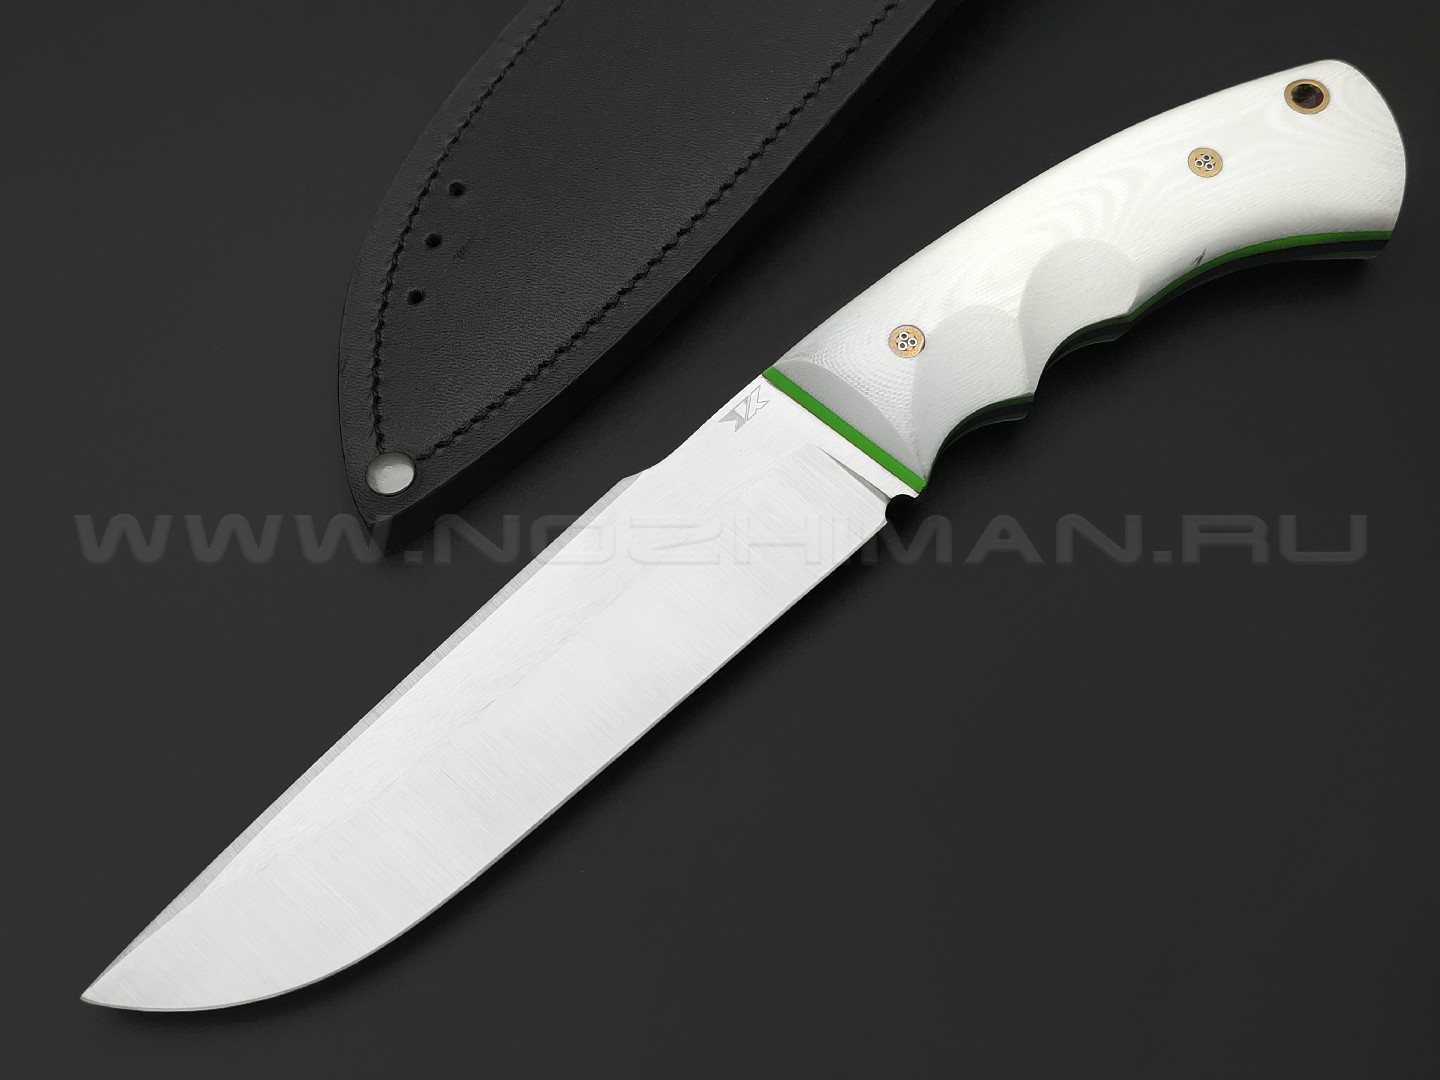 7 ножей нож Беркут XL сталь K340 satin, рукоять G10 white